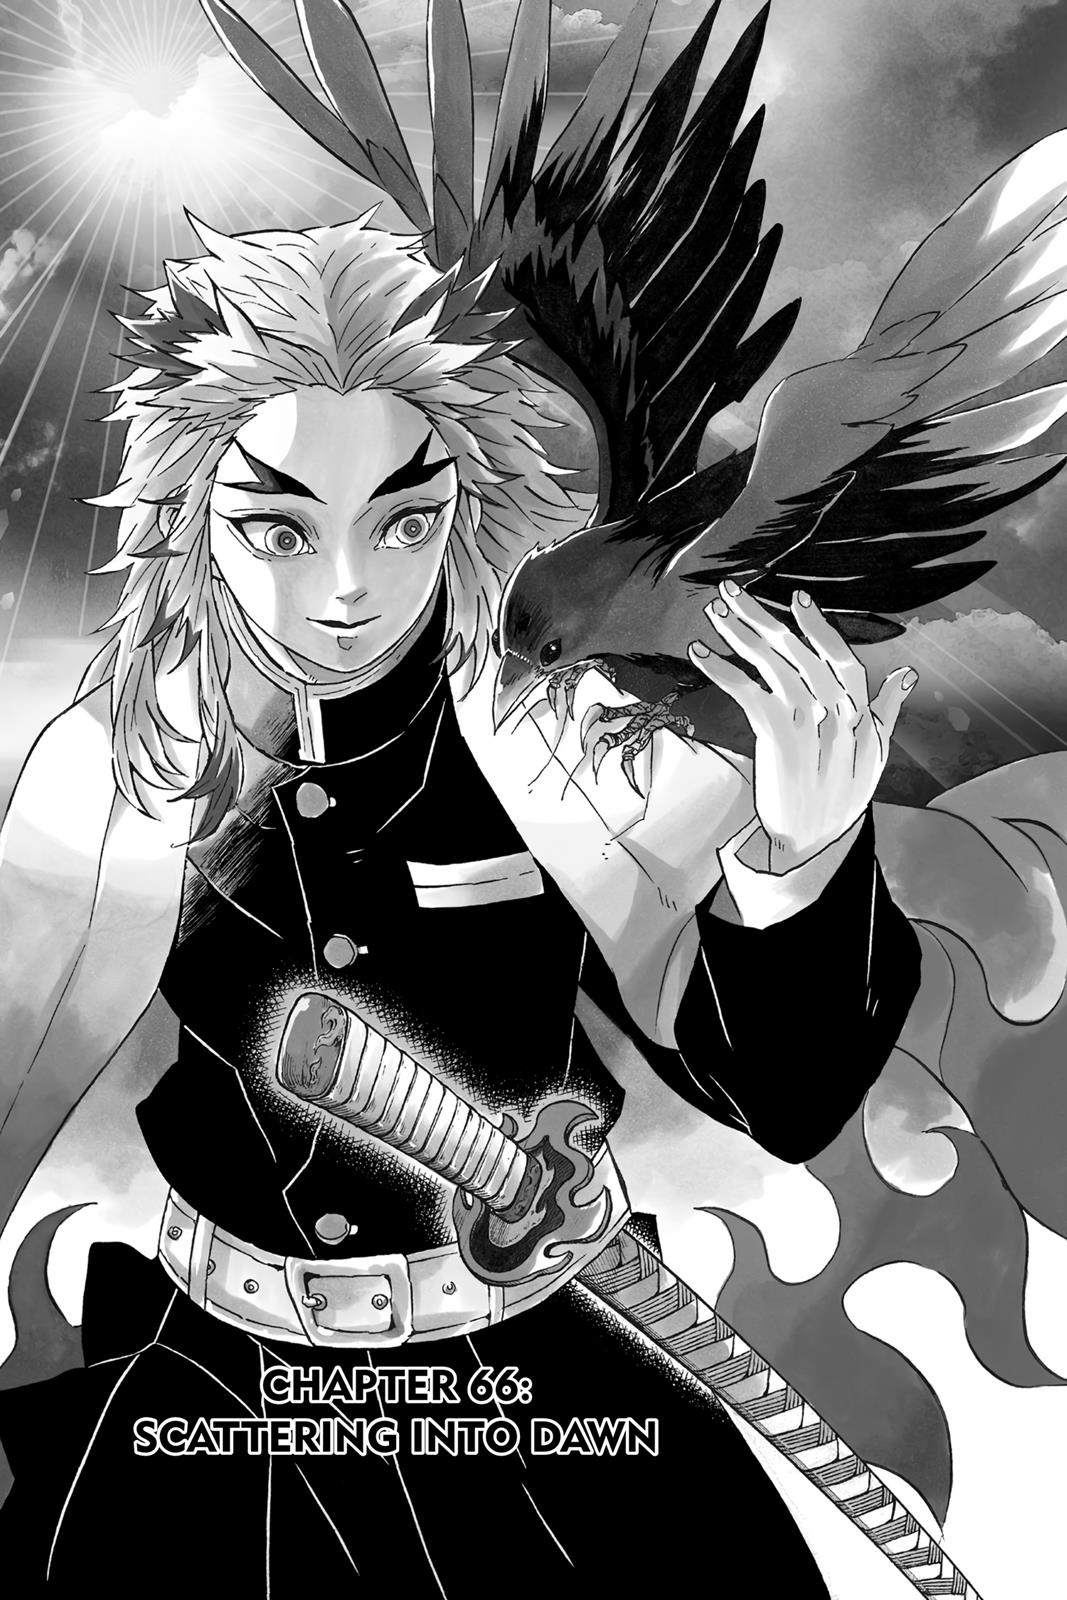 Demon Slayer Manga Manga Chapter - 66 - image 1